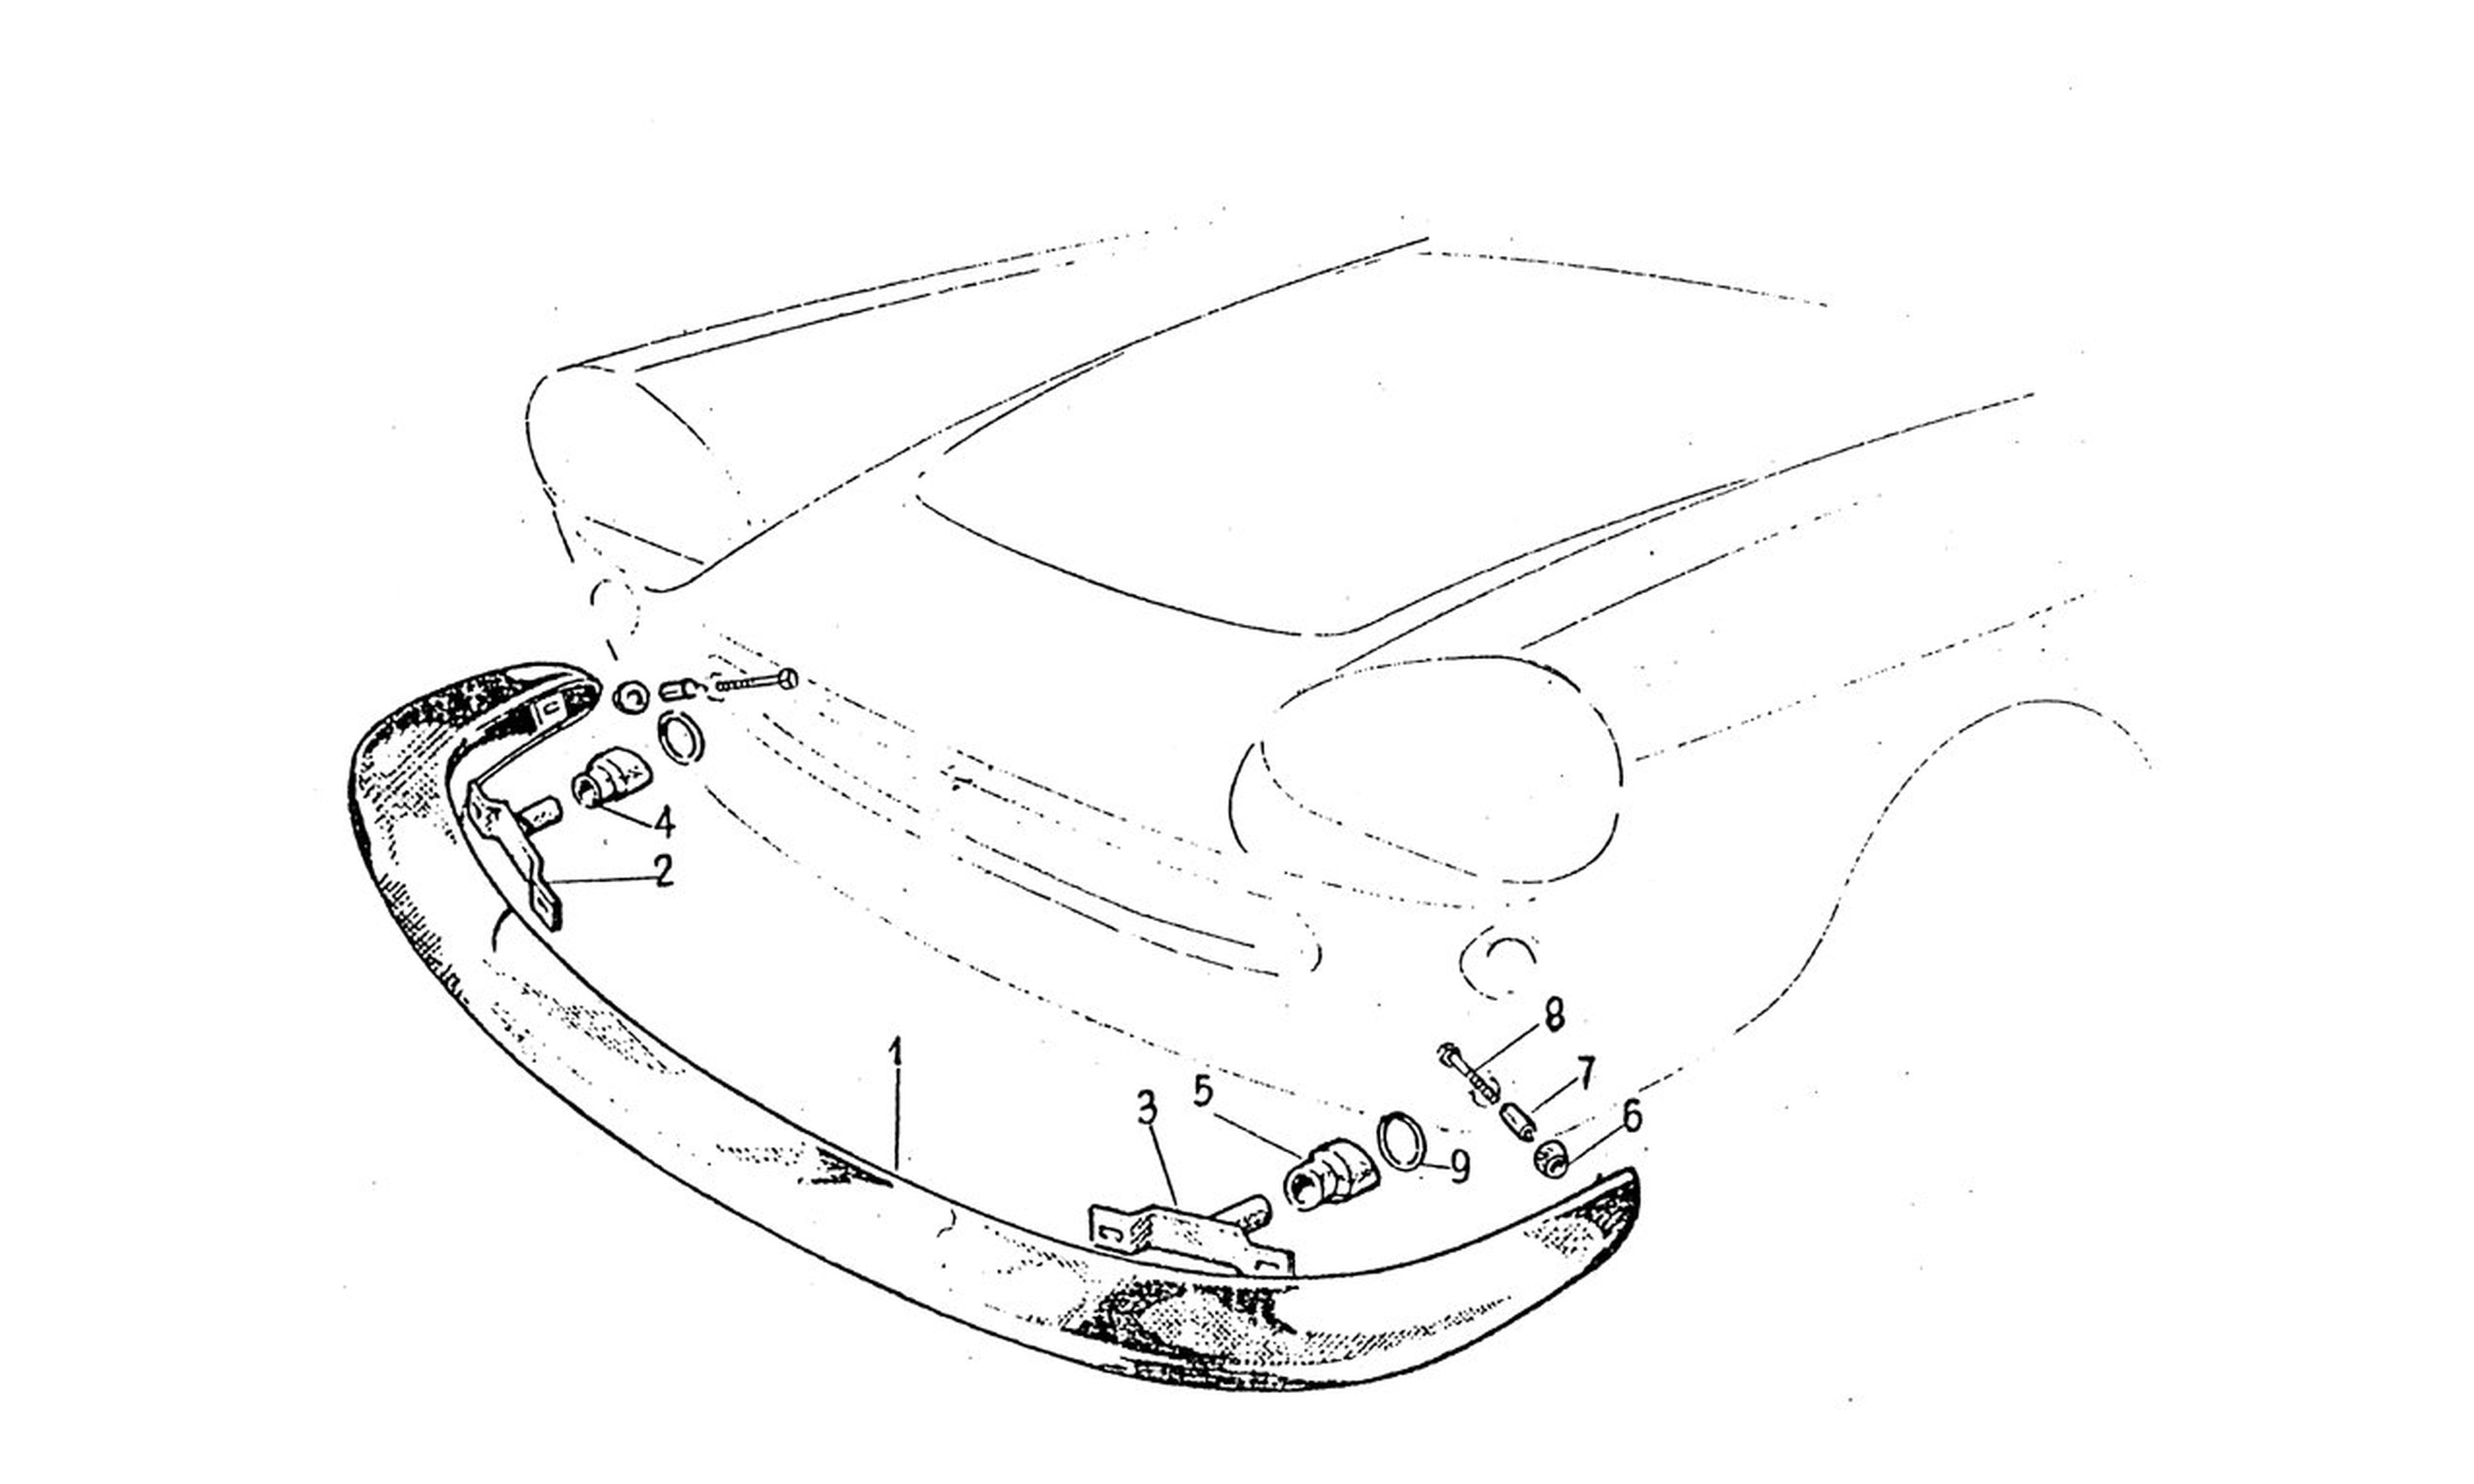 Schematic: Front Bumper Series 1 (Per G.S. F.V.N. 566 - Per G.D. F.V.N. 59)